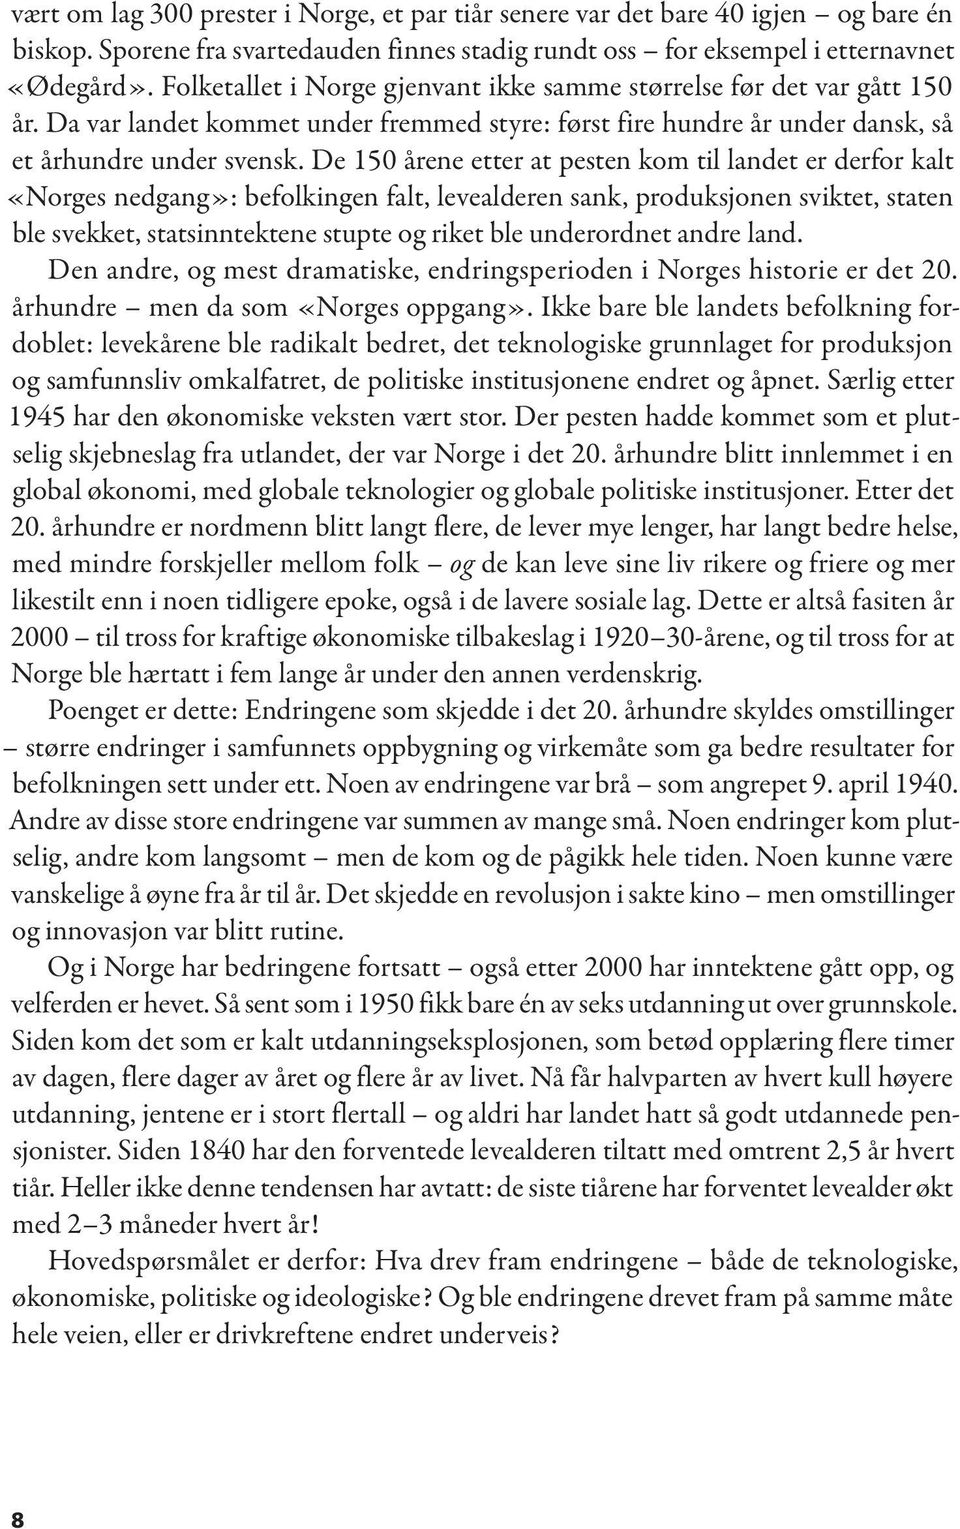 De 150 årene etter at pesten kom til landet er derfor kalt «Norges nedgang»: befolkingen falt, levealderen sank, produksjonen sviktet, staten ble svekket, statsinntektene stupte og riket ble